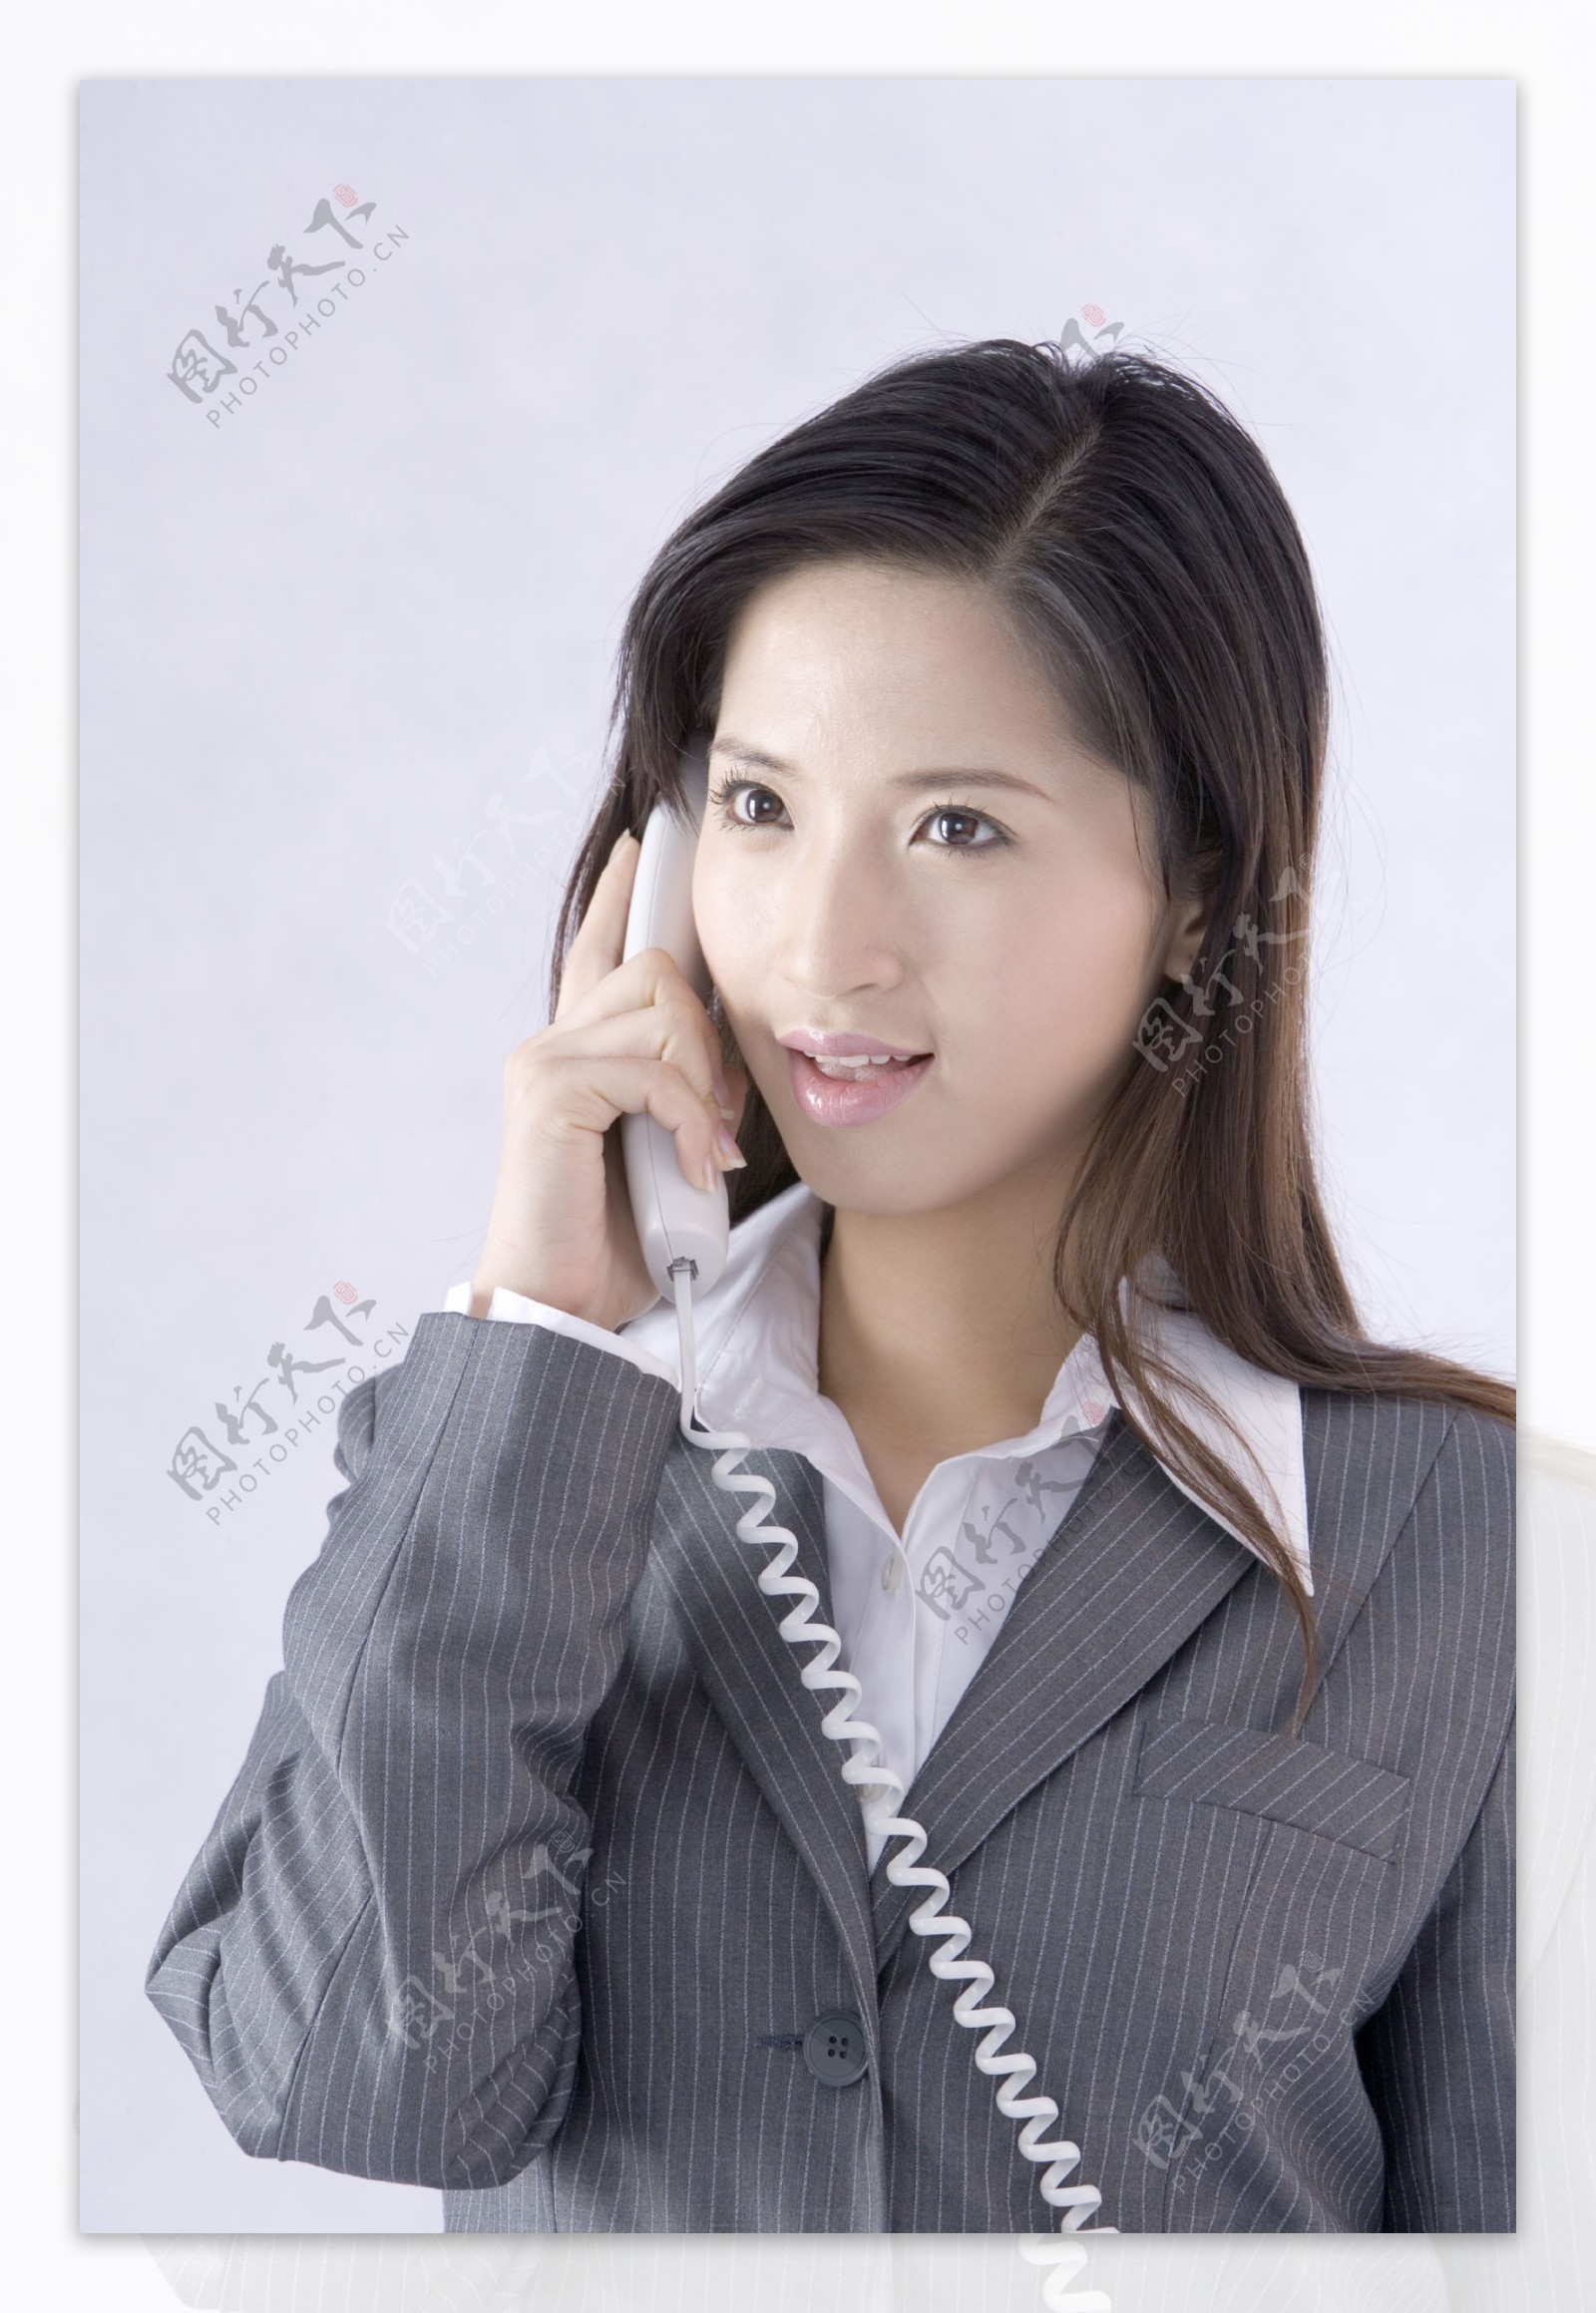 穿着职业装打电话的女性图片图片